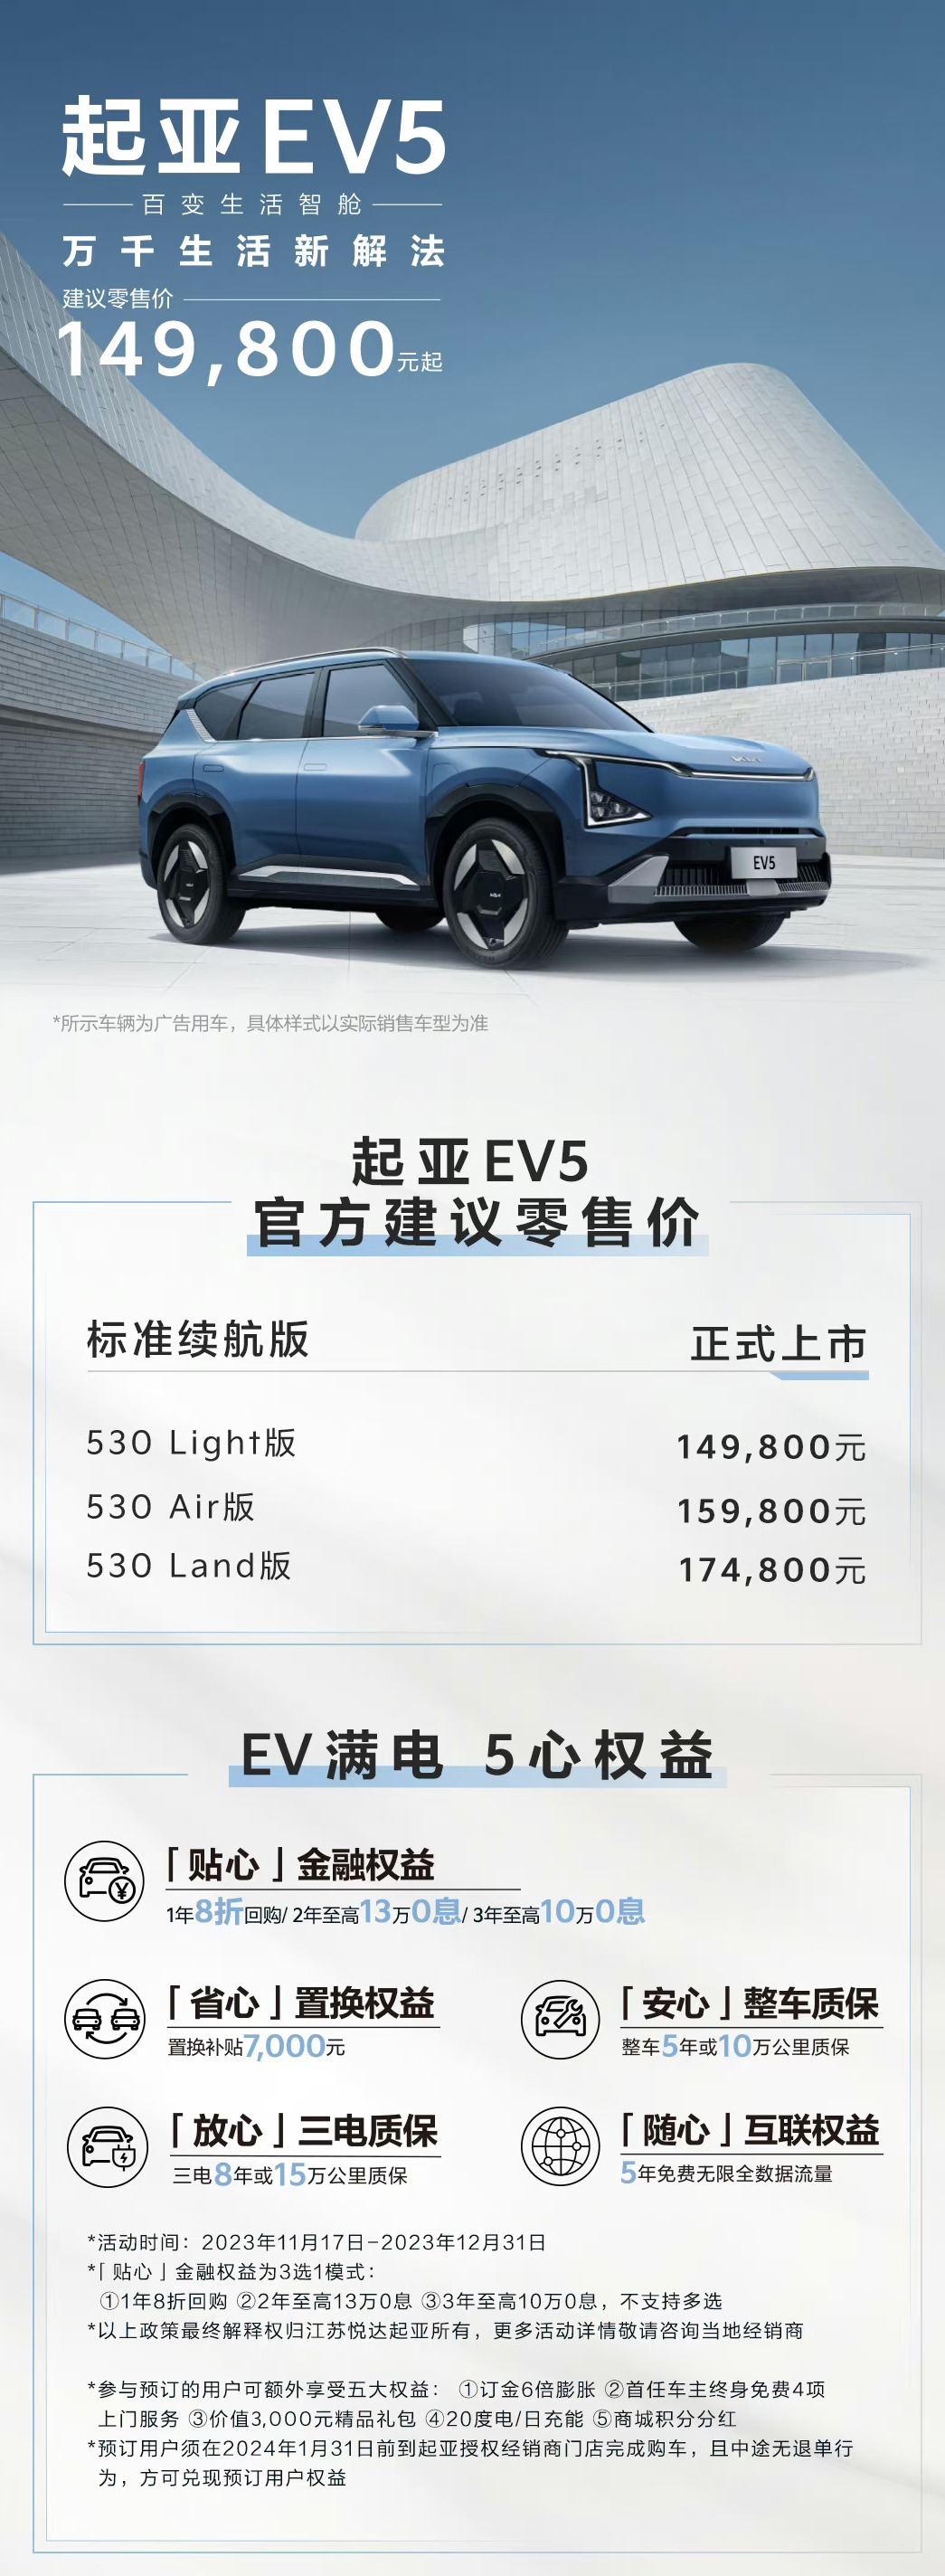 9月发布/2022年上市 smart纯电动SUV渲染图曝光_EV知道